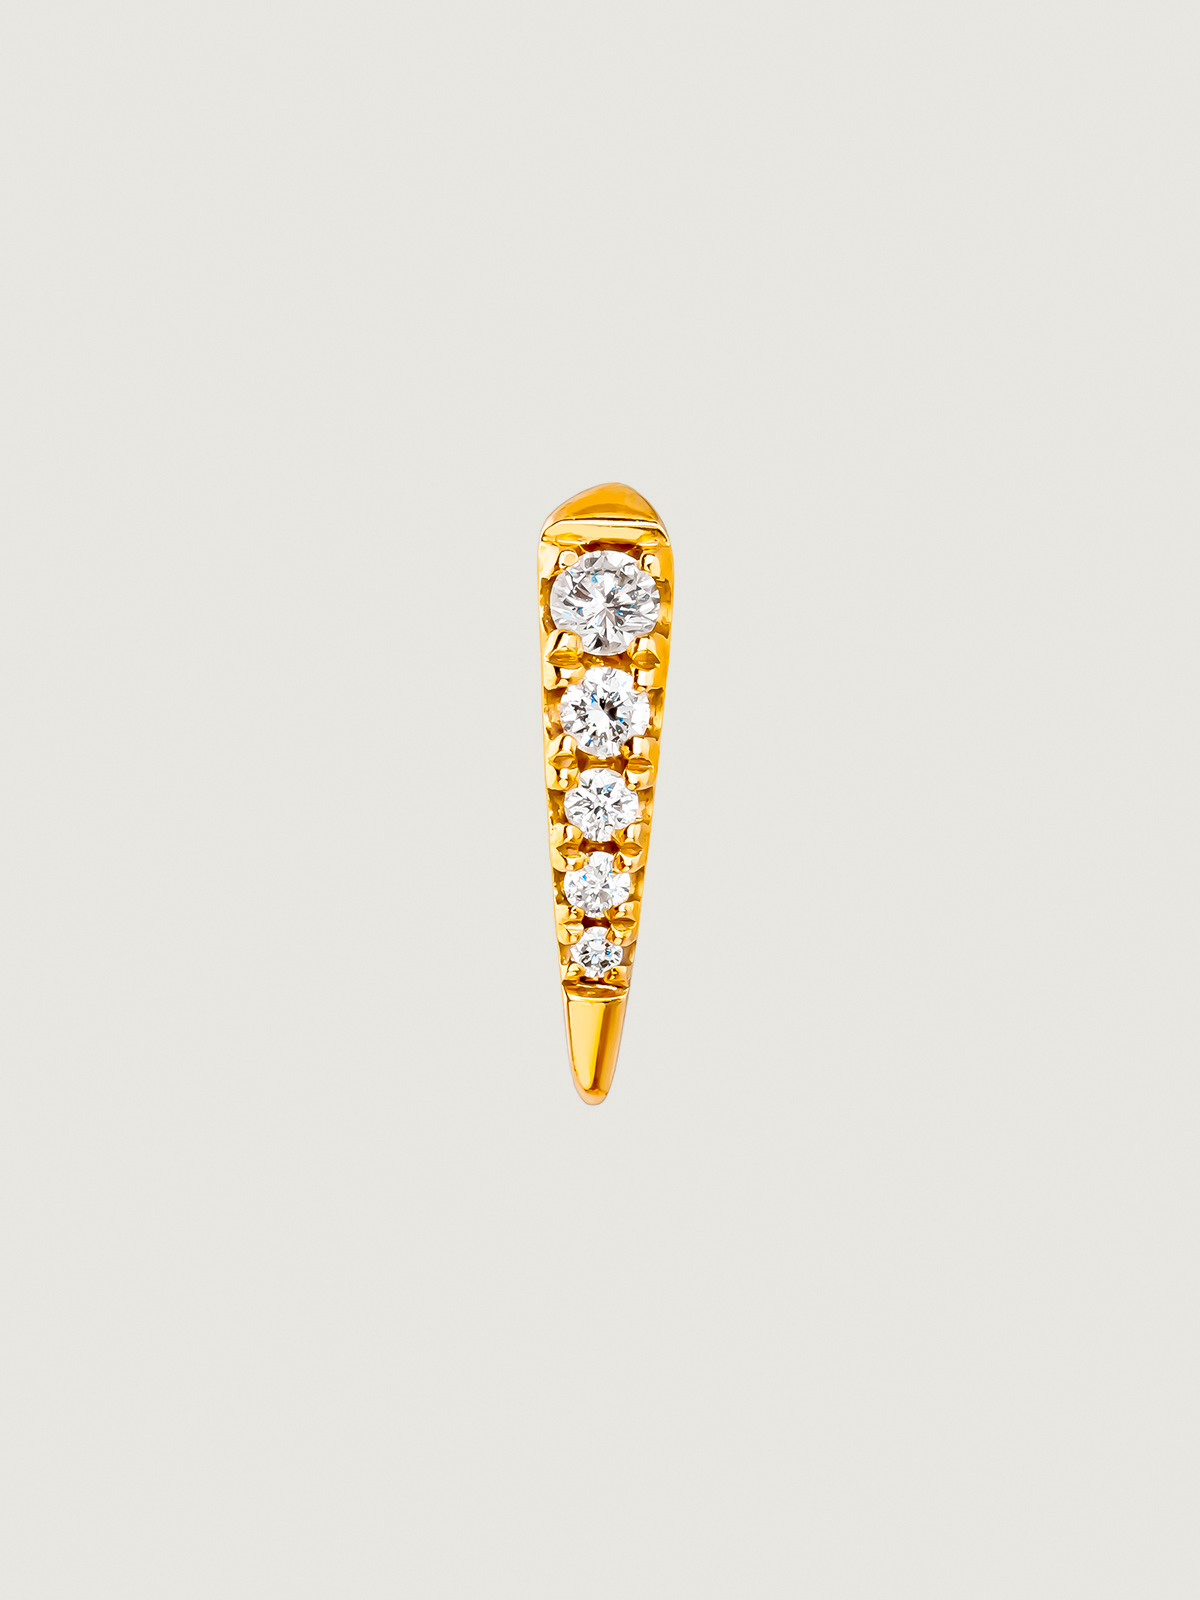 Boucle d'oreille individuelle en or jaune 9K avec diamants